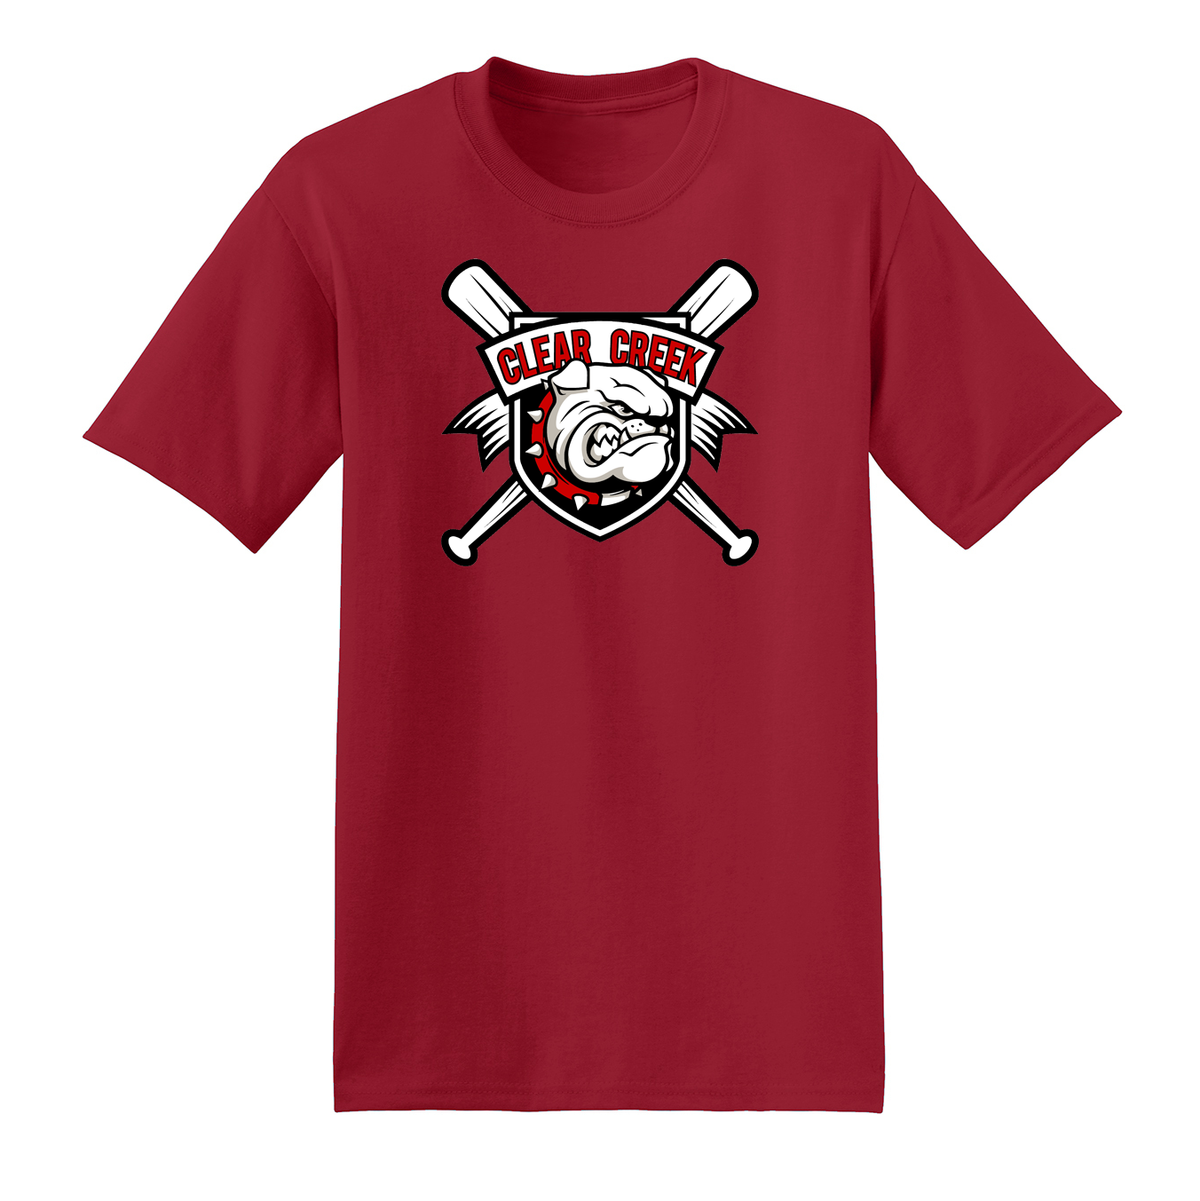 Clear Creek Bulldog Baseball T-Shirt